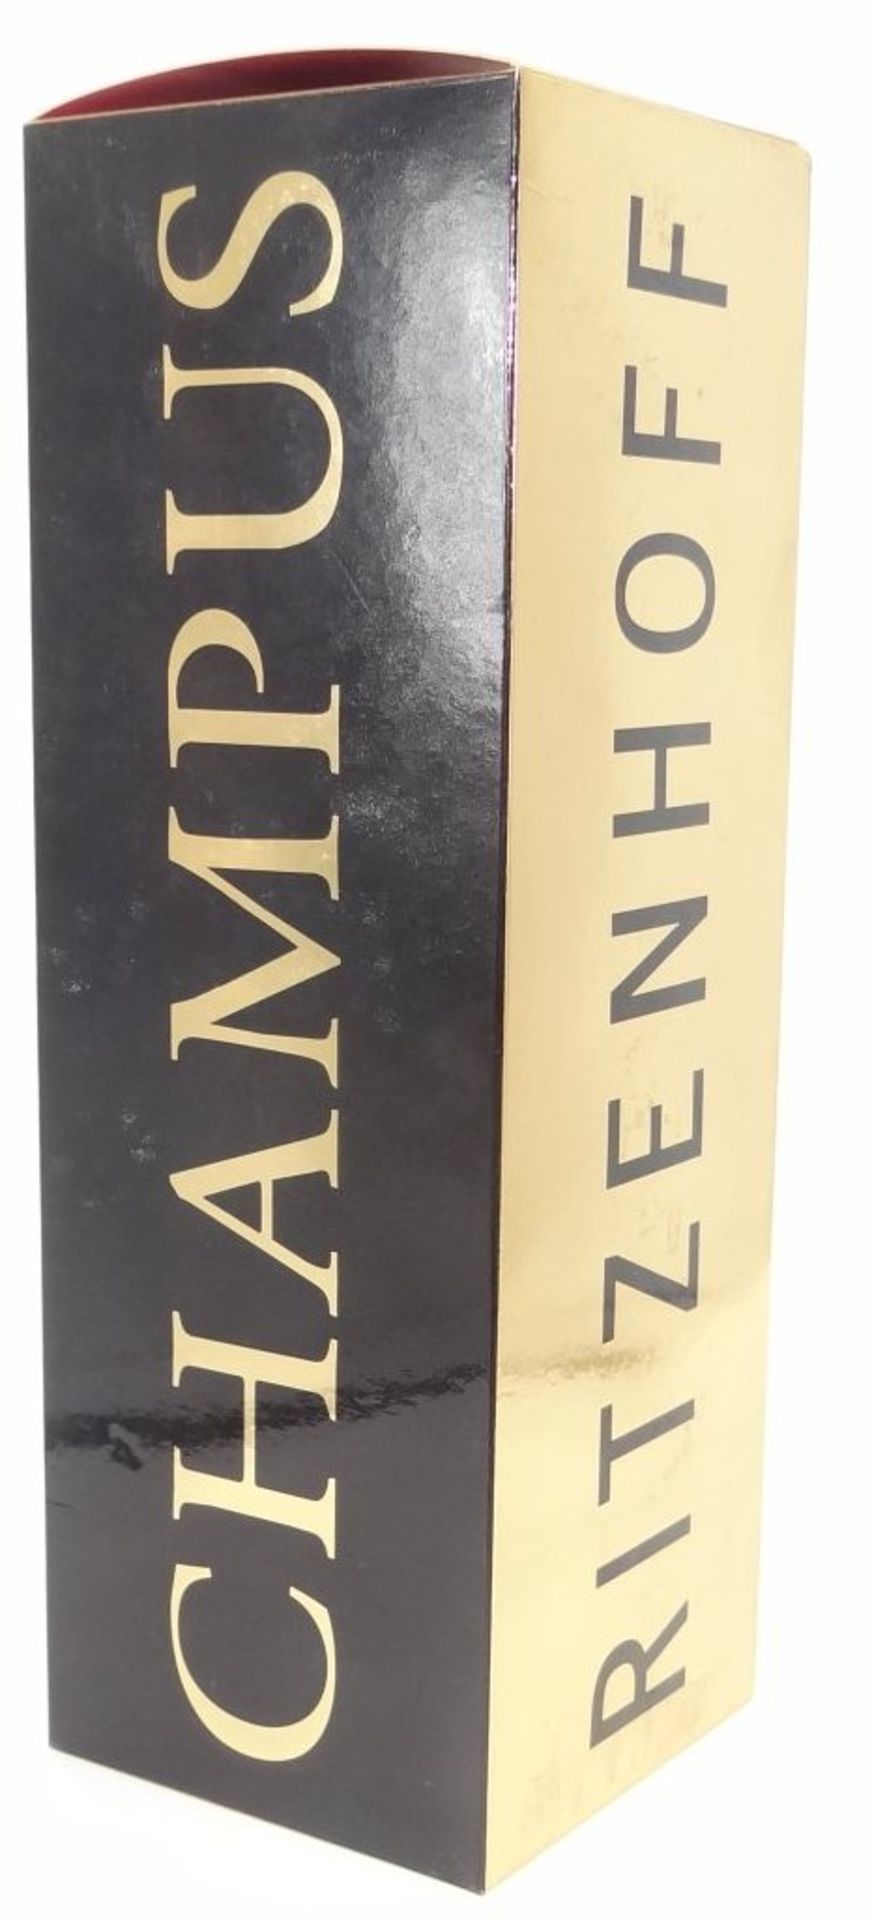 Ritzenhoff CHAMPUS Champagner Glas Heinz TE Laake 1998 in Box mit Serviette - Bild 2 aus 8